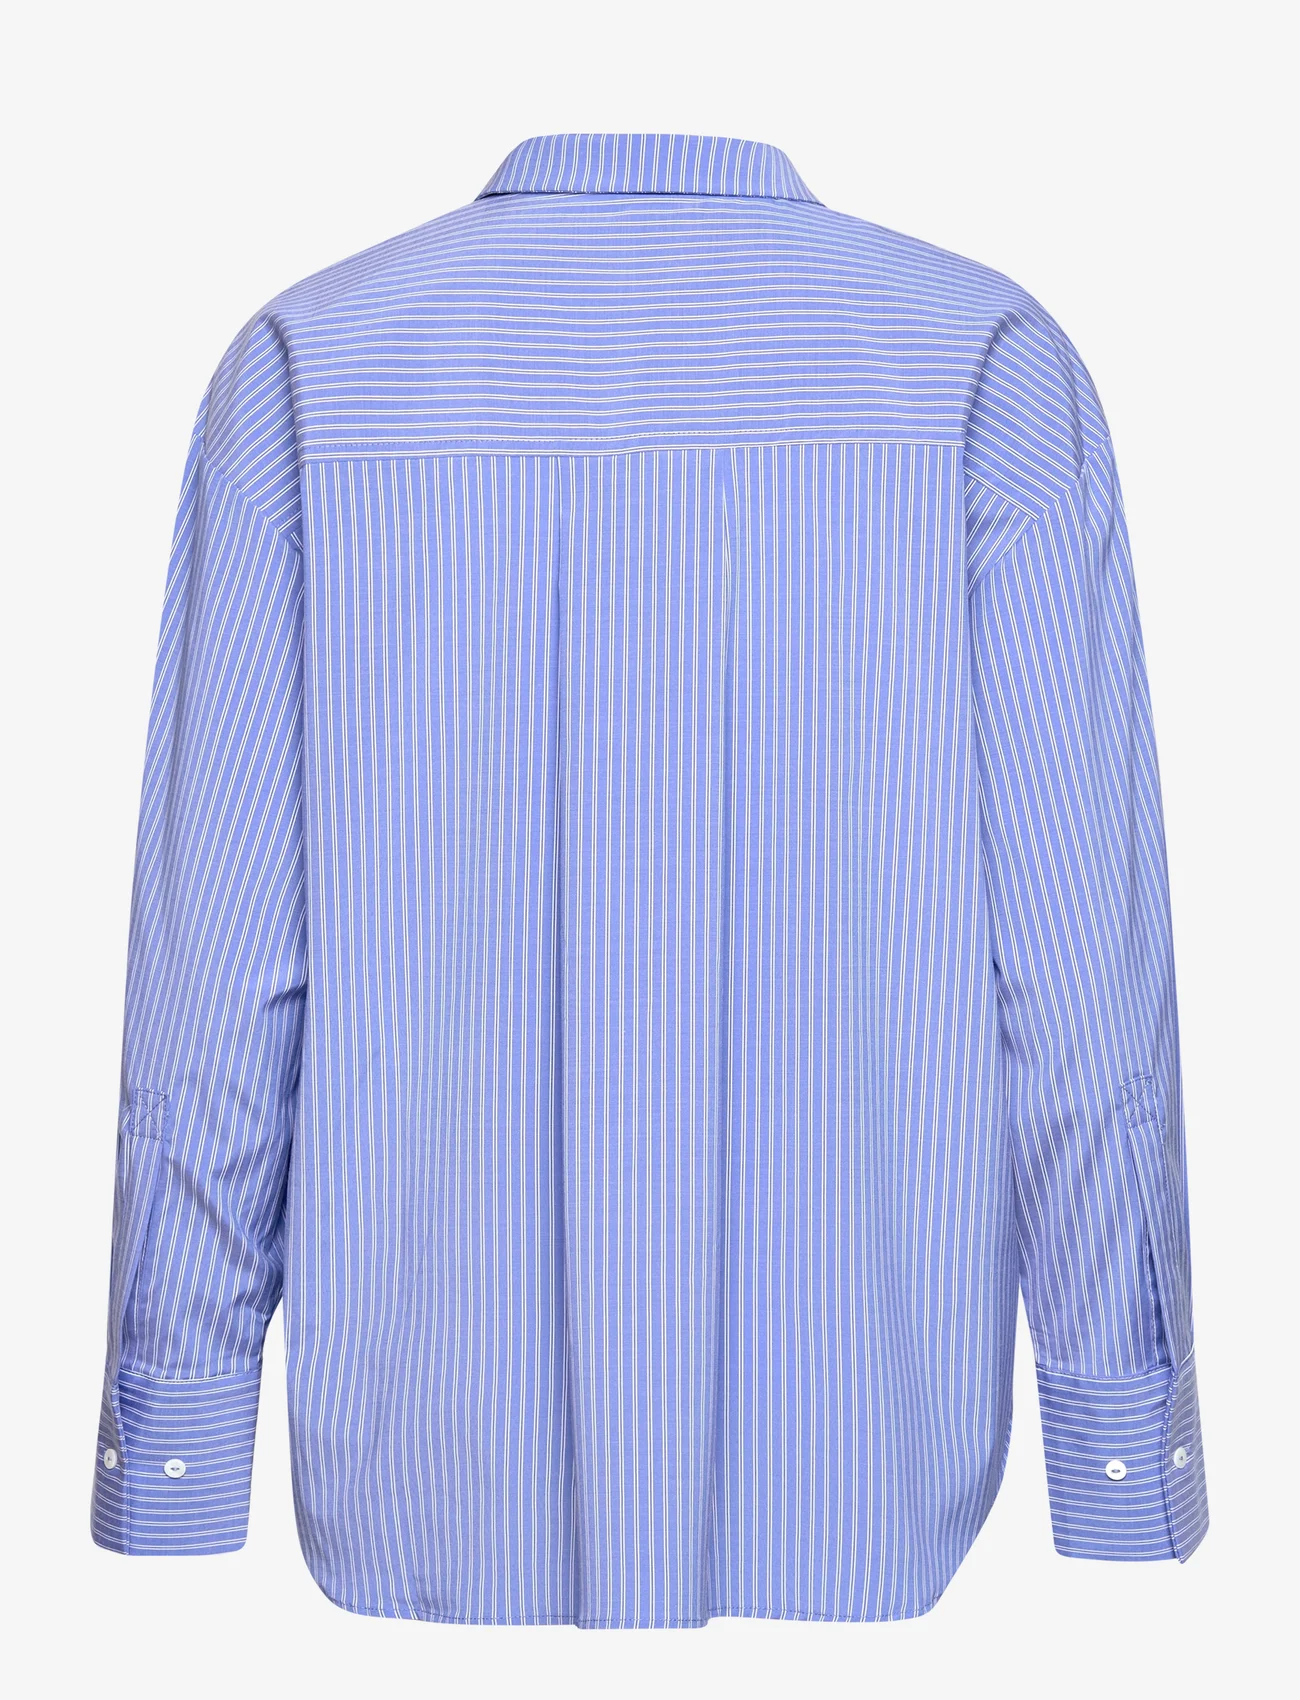 Sofie Schnoor - Shirt - langermede skjorter - blue striped - 1